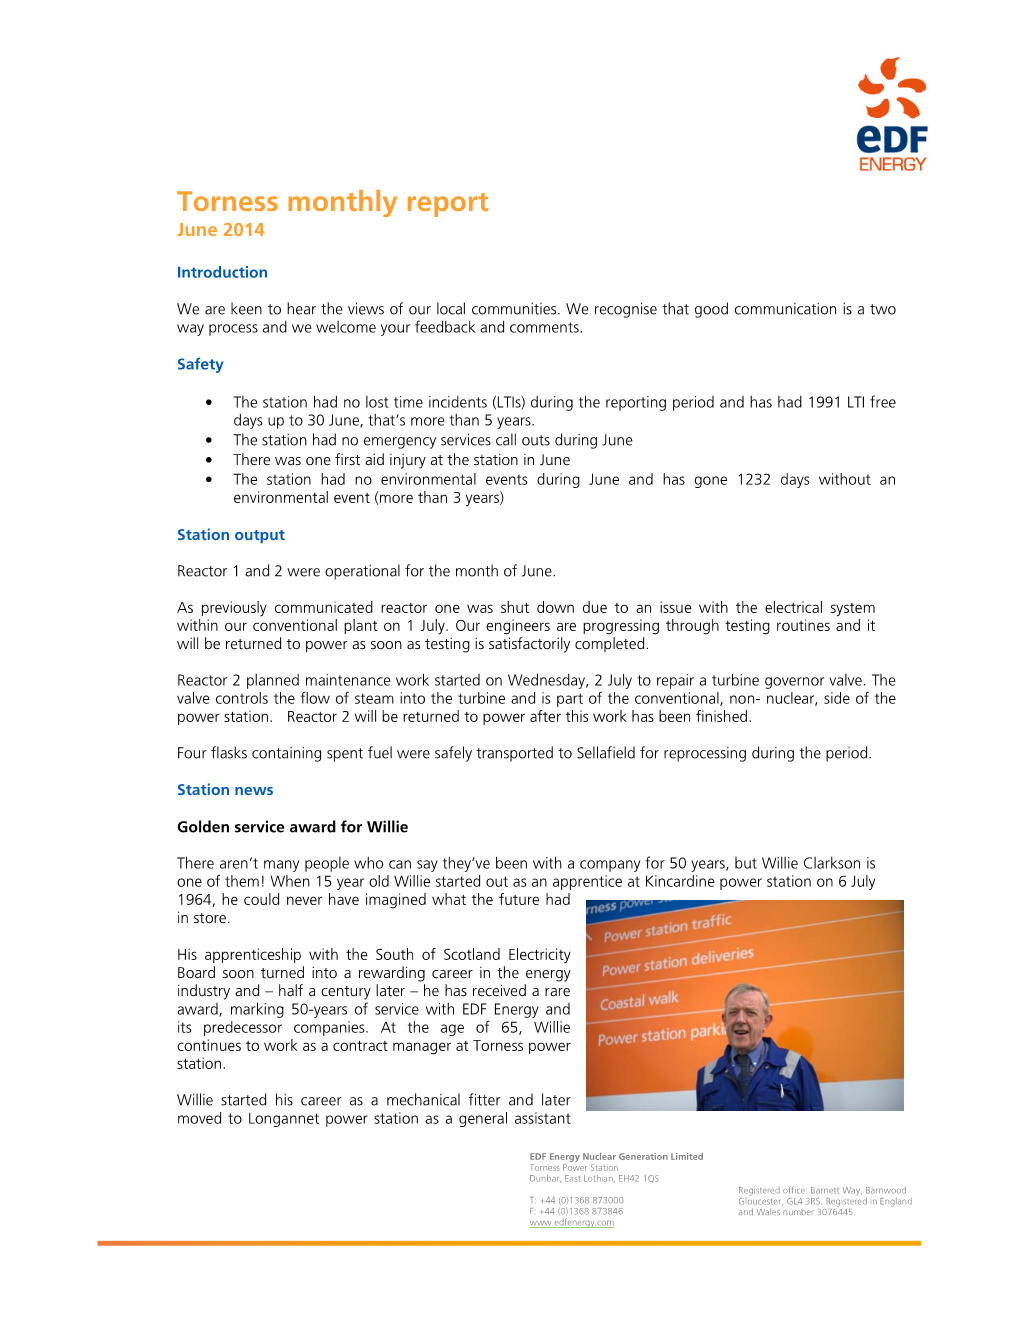 Torness Monthly Report June 2014